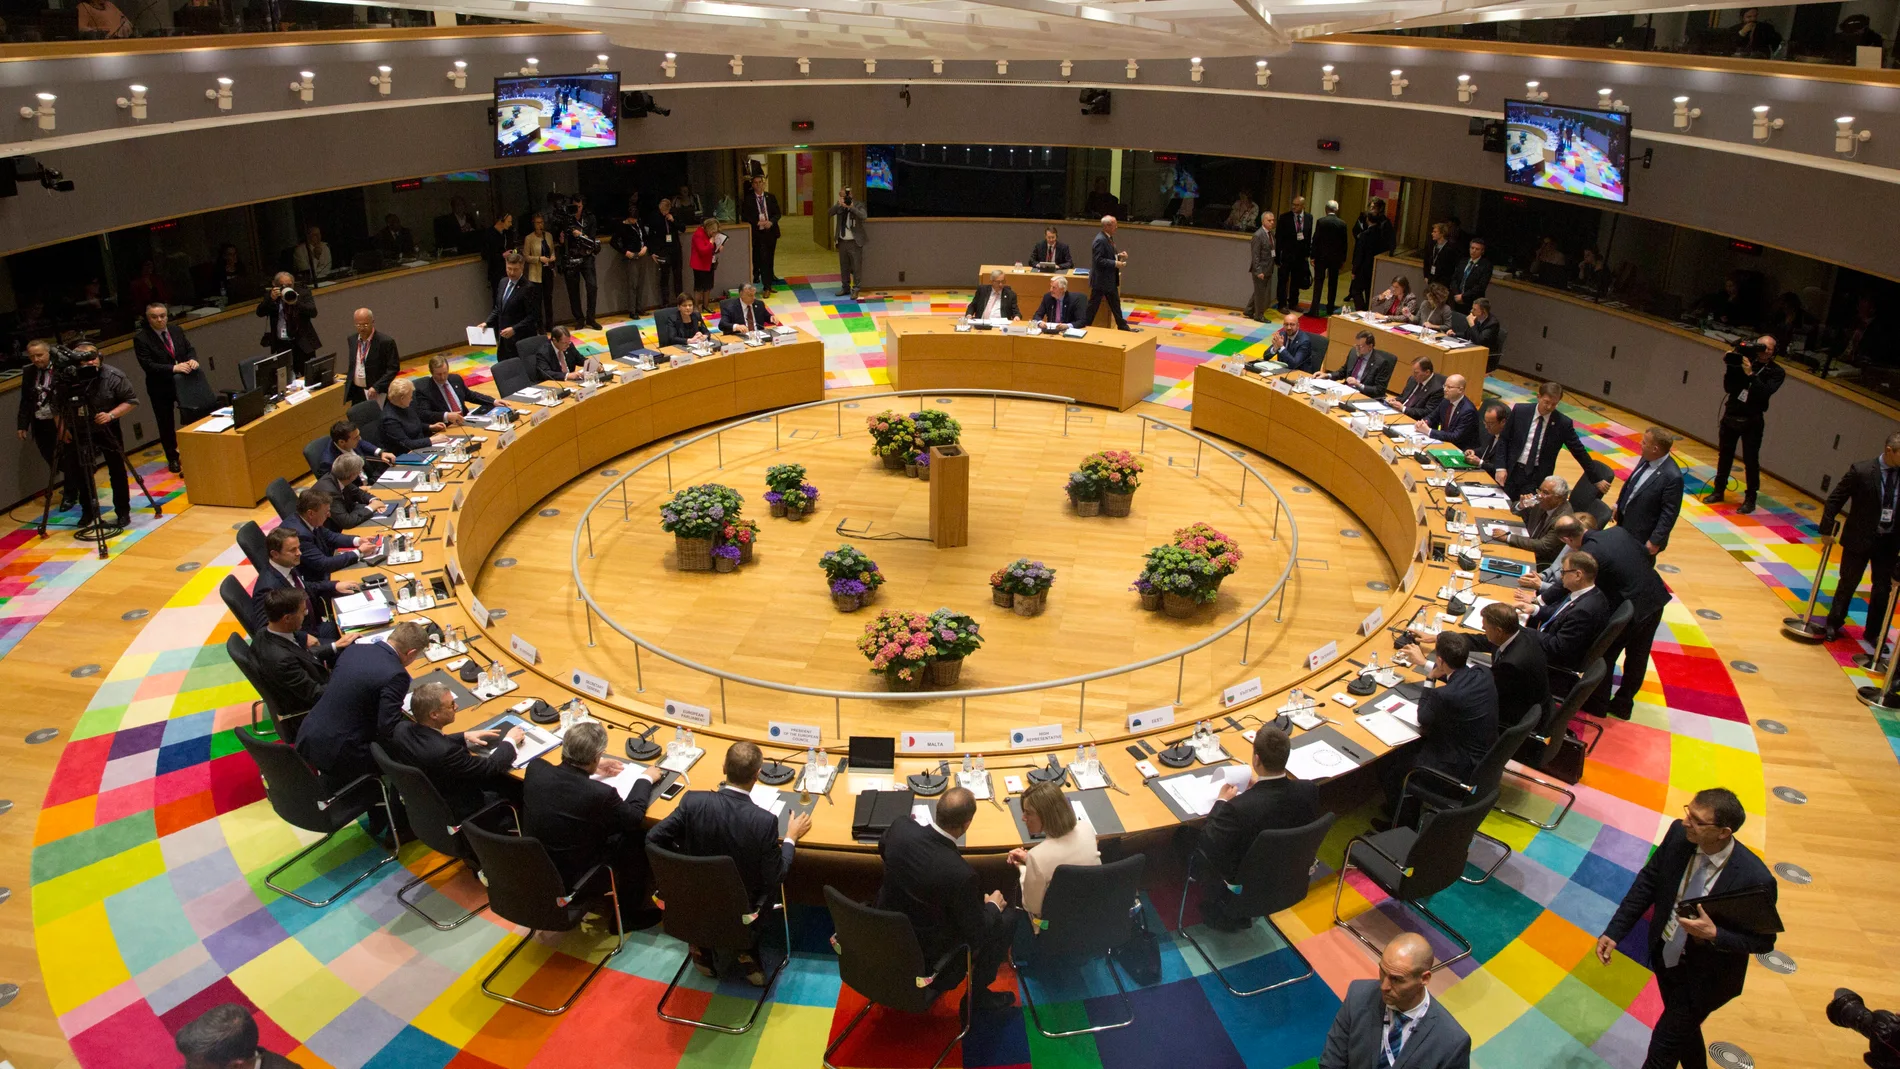 Vista general del comienzo de la reunión del Consejo Europeo en Bruselas